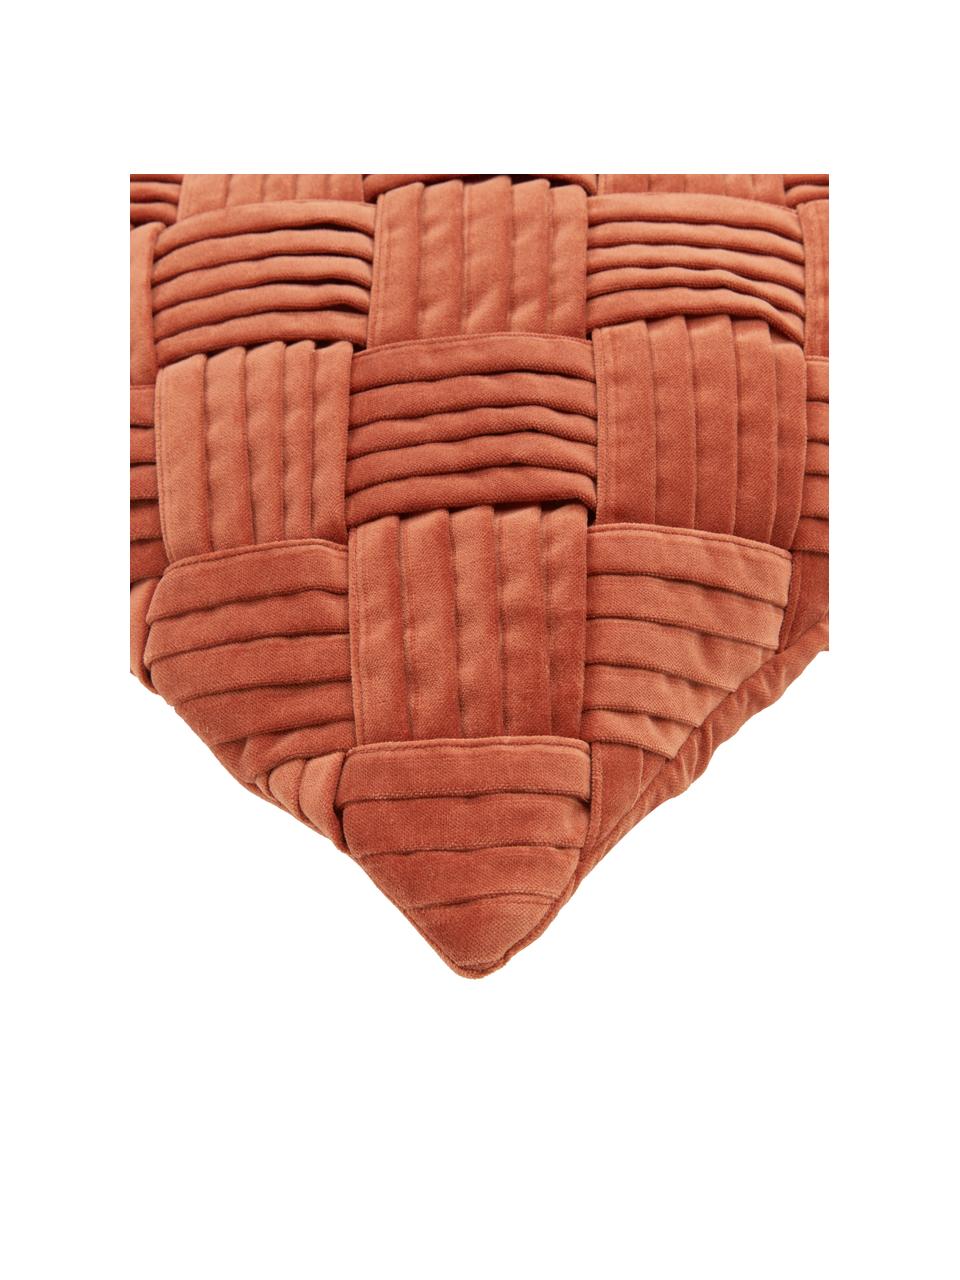 Samt-Kissenhülle Sina mit Strukturmuster, Samt (100 % Baumwolle), Terrakotta, B 45 x L 45 cm